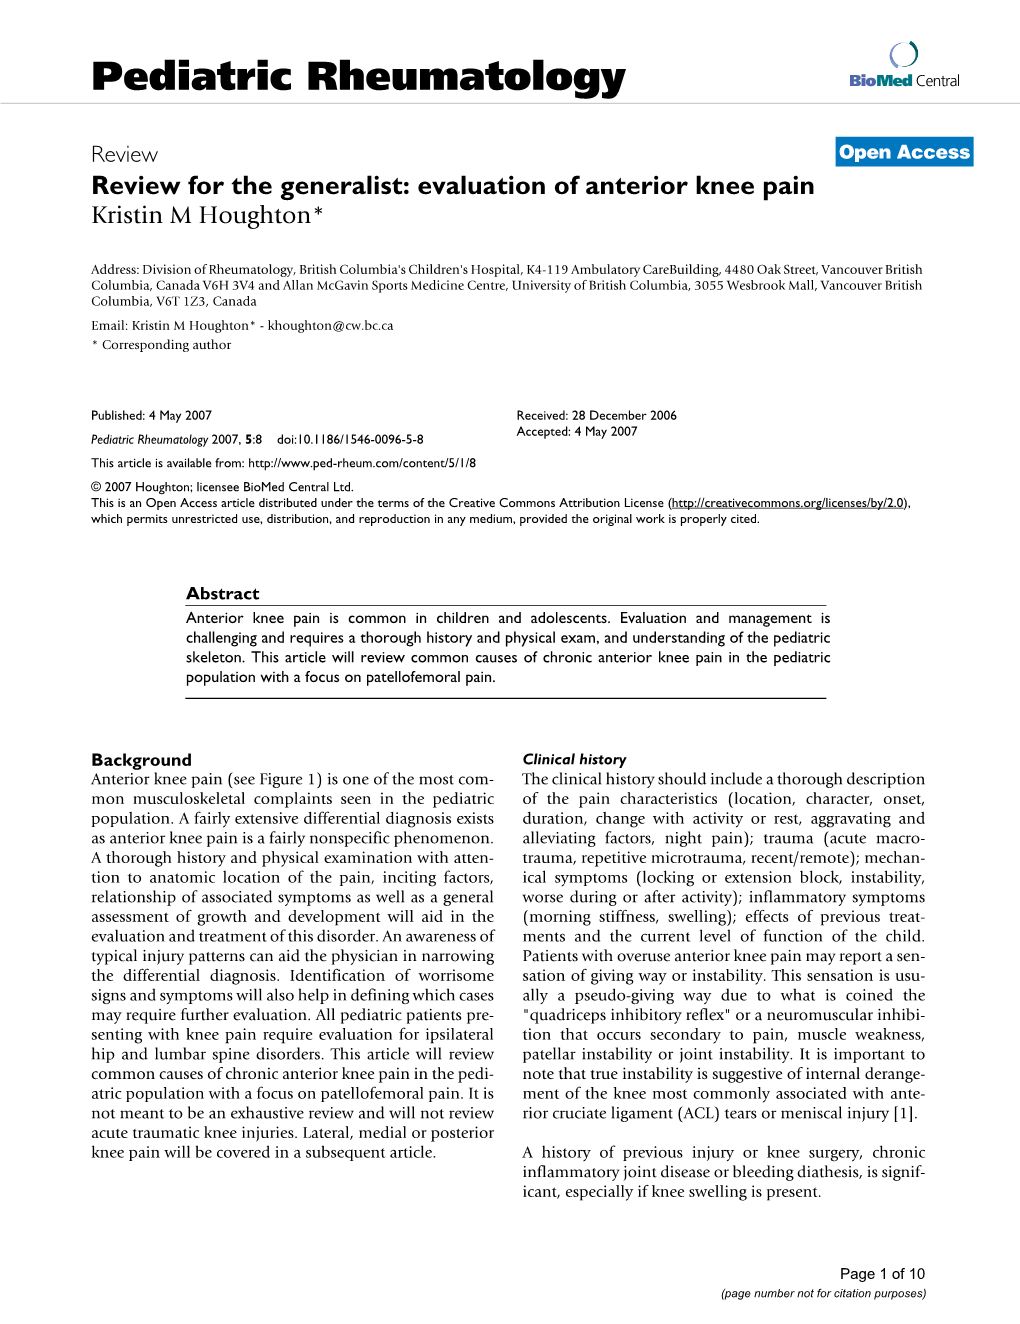 Evaluation of Anterior Knee Pain Kristin M Houghton*